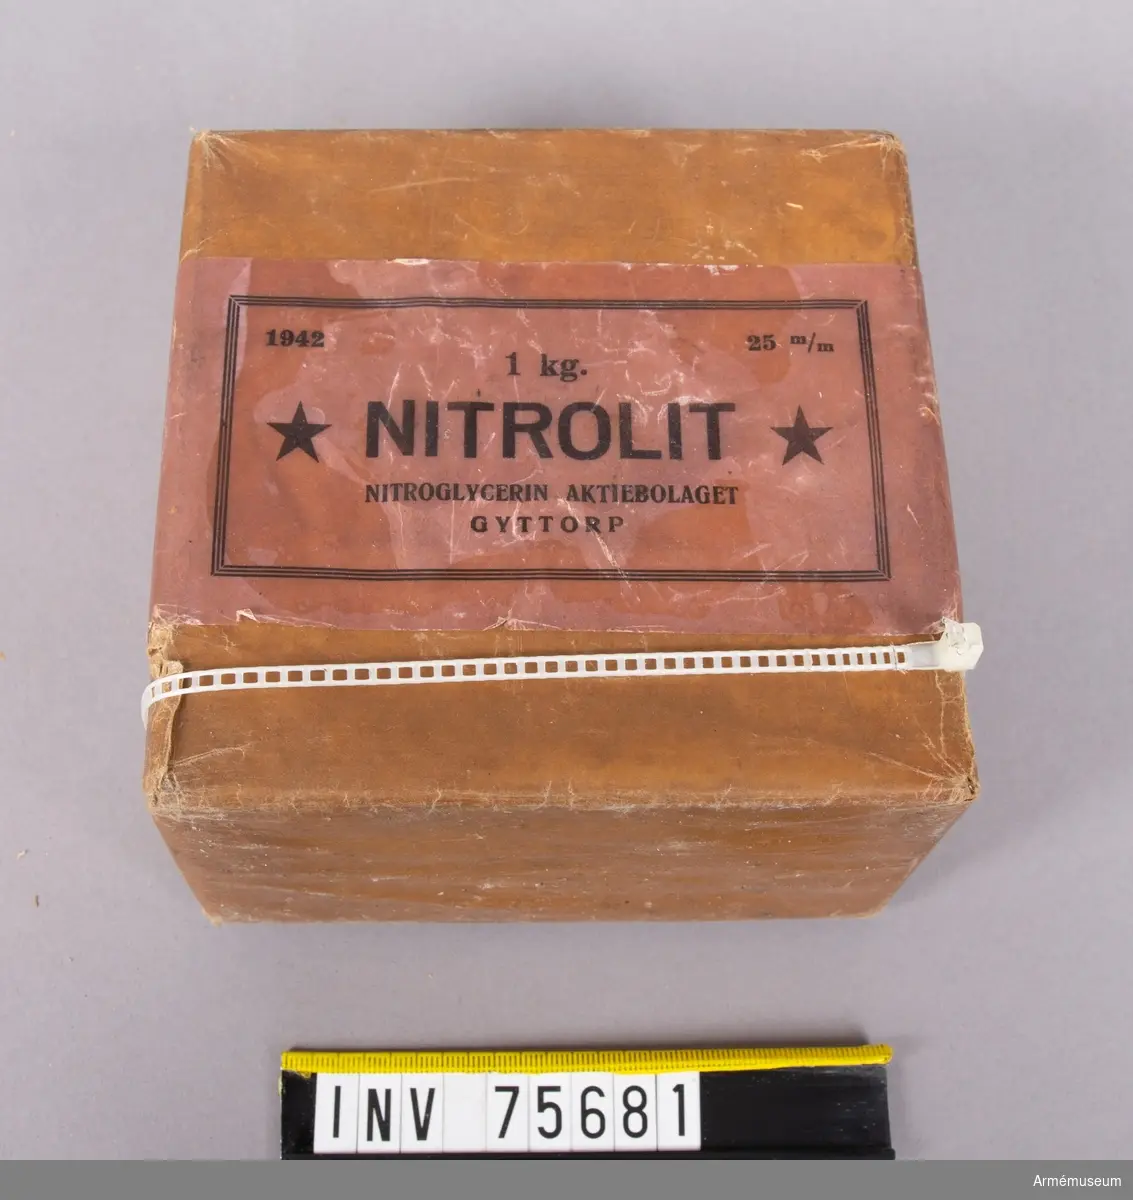 Grupp G III.
25 mm nitrolitpatroner.